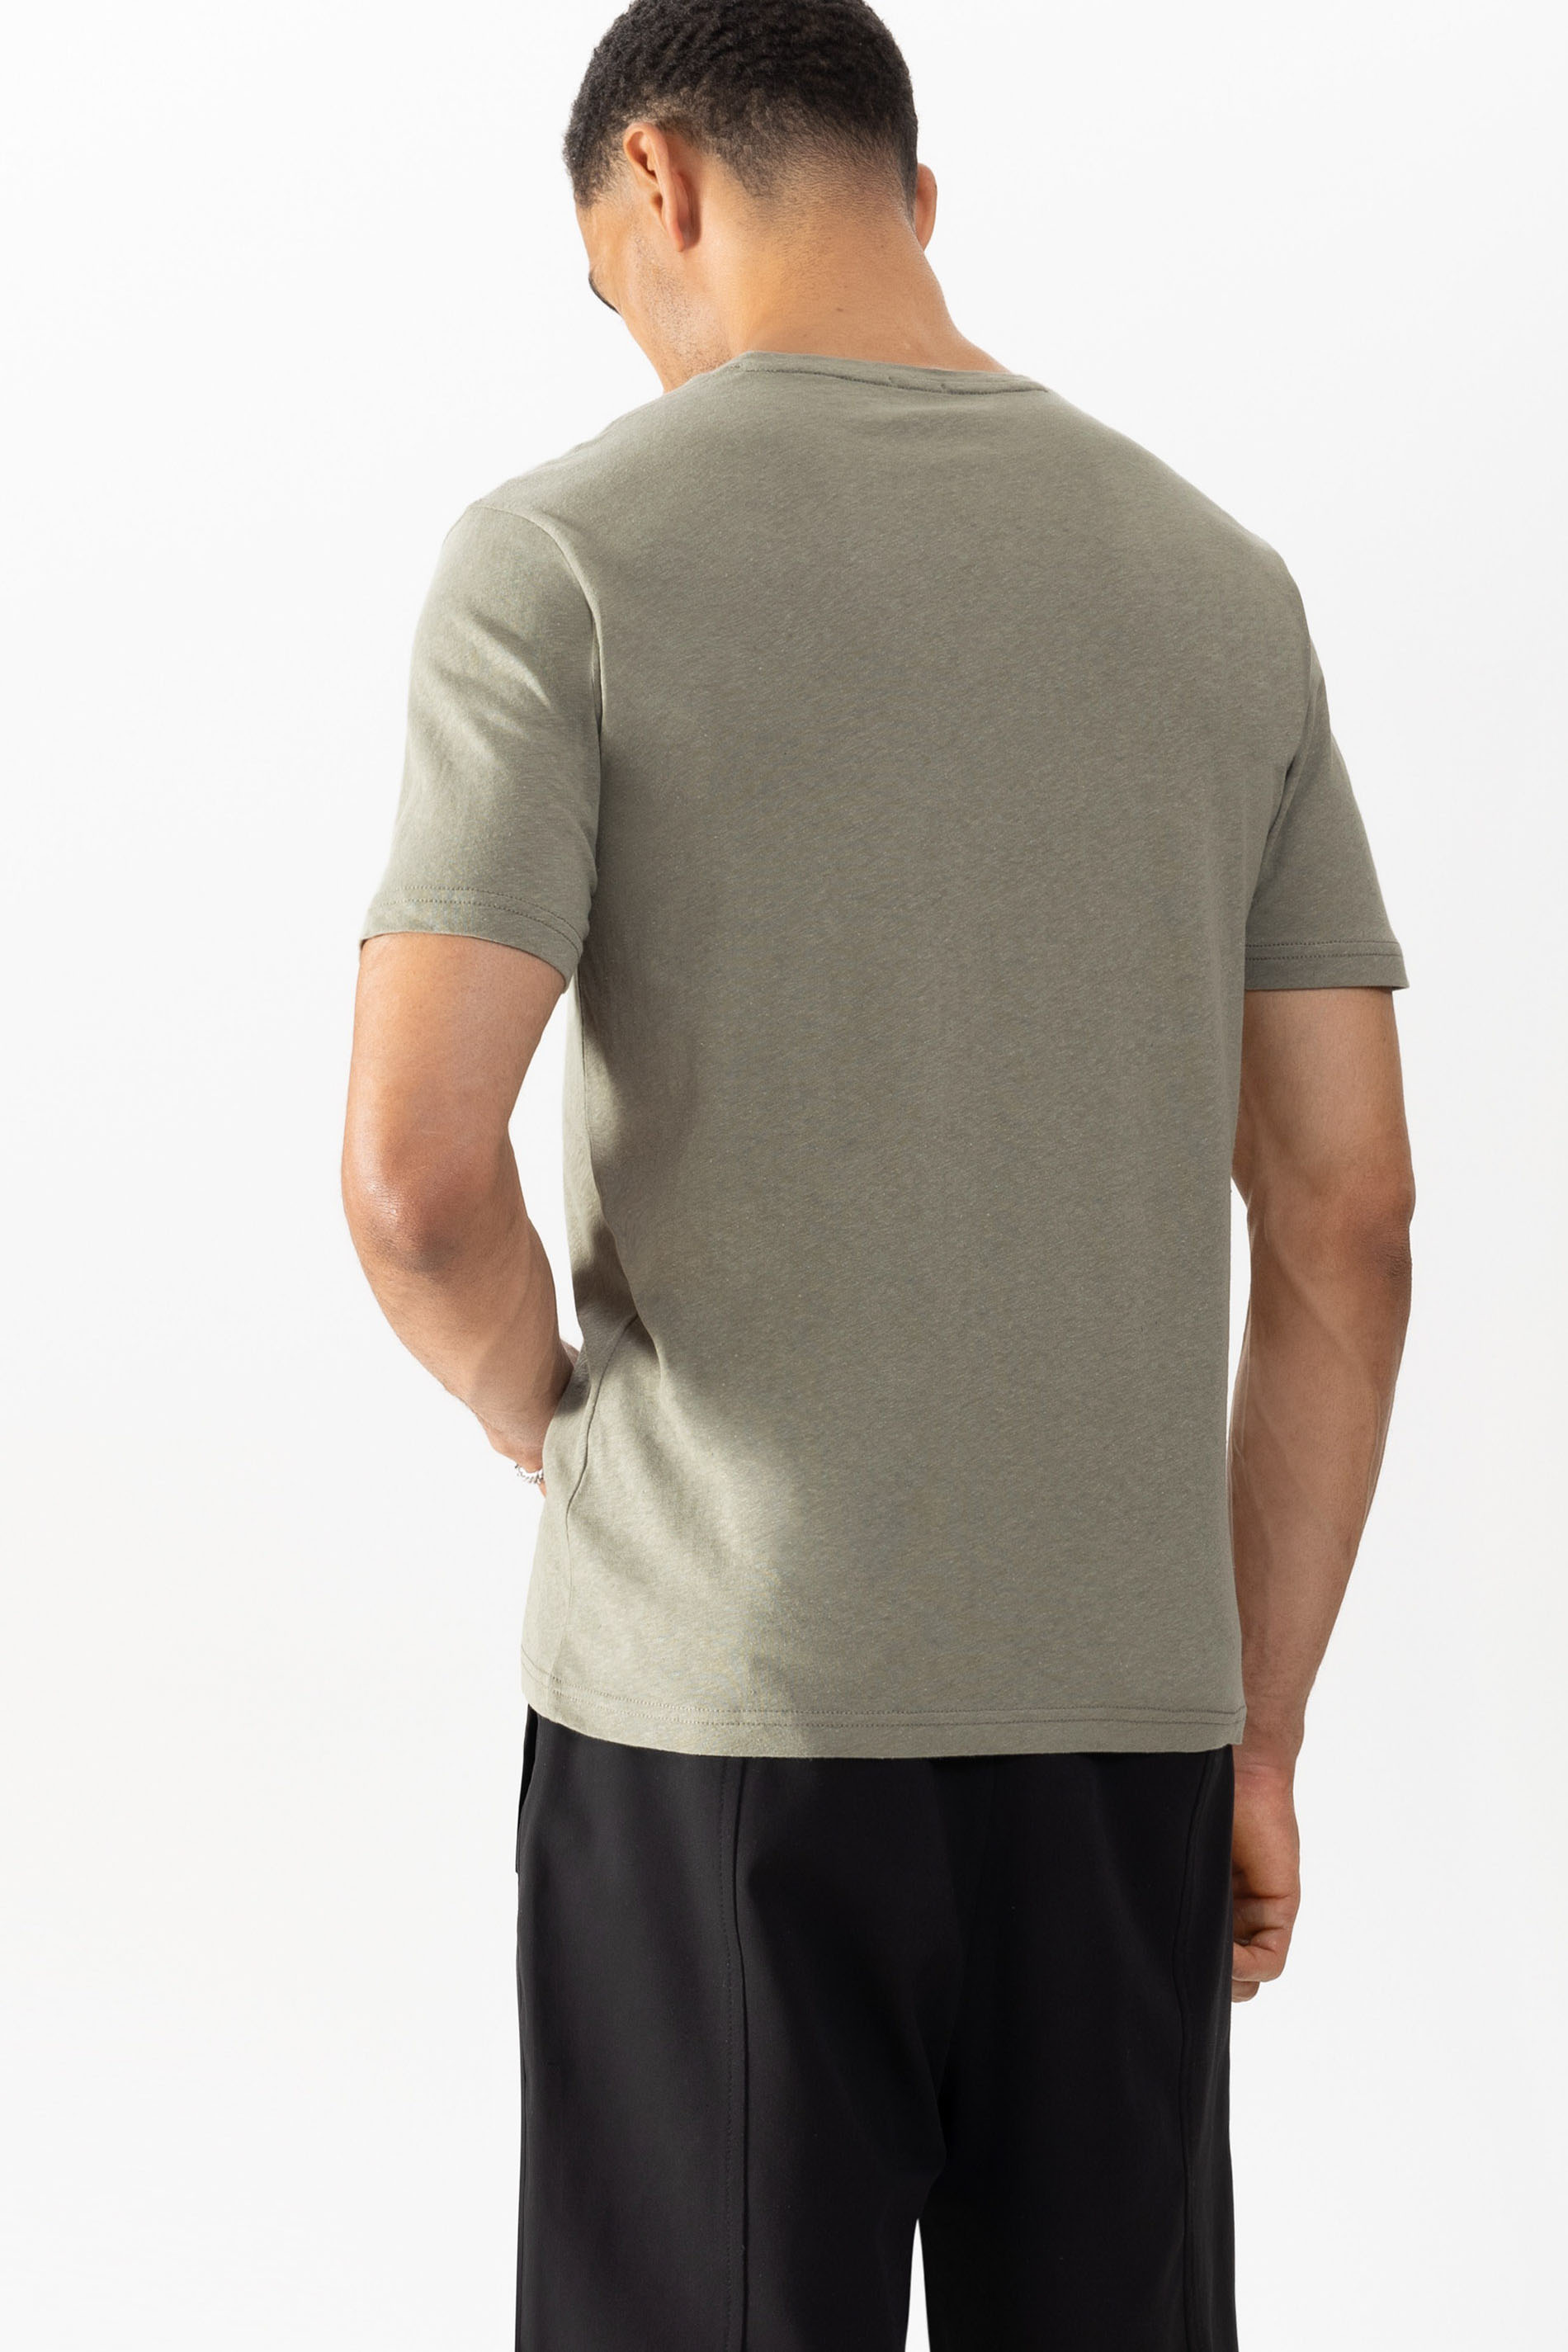 T-shirt Serie Linen Rear View | mey®